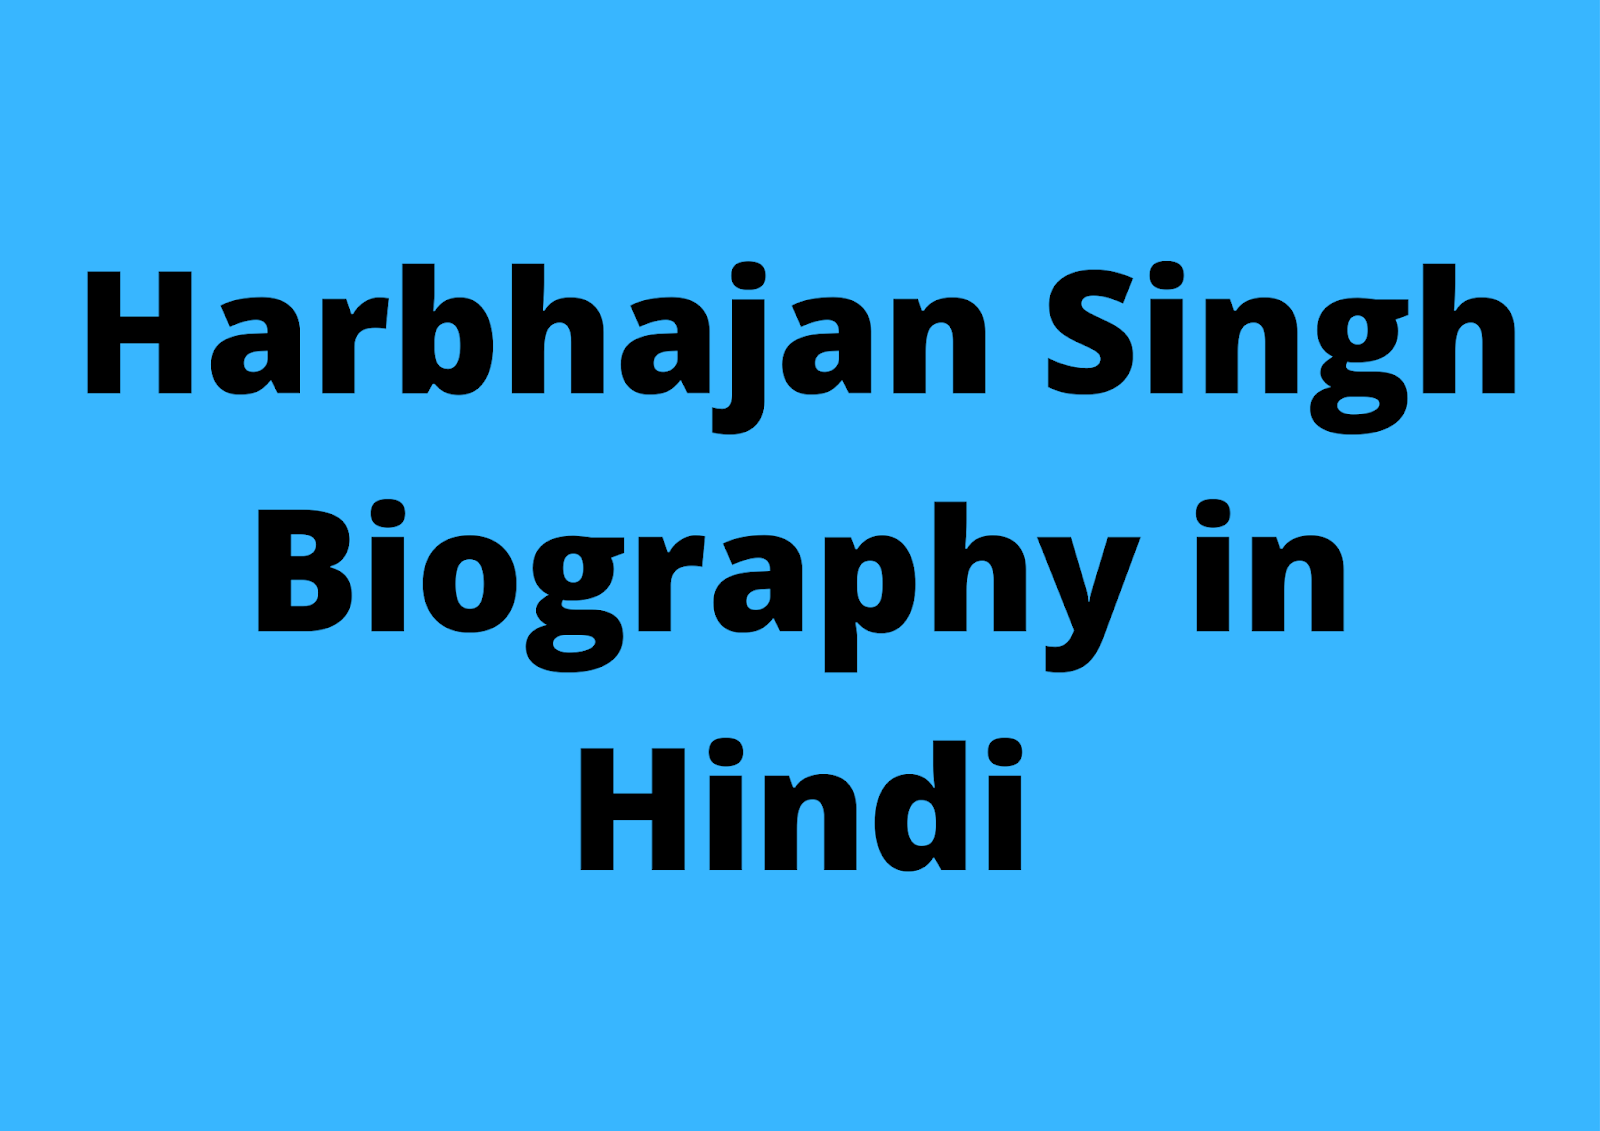 हरभजन सिंह की जीवन कहानी | Harbhajan Singh Biography in Hindi